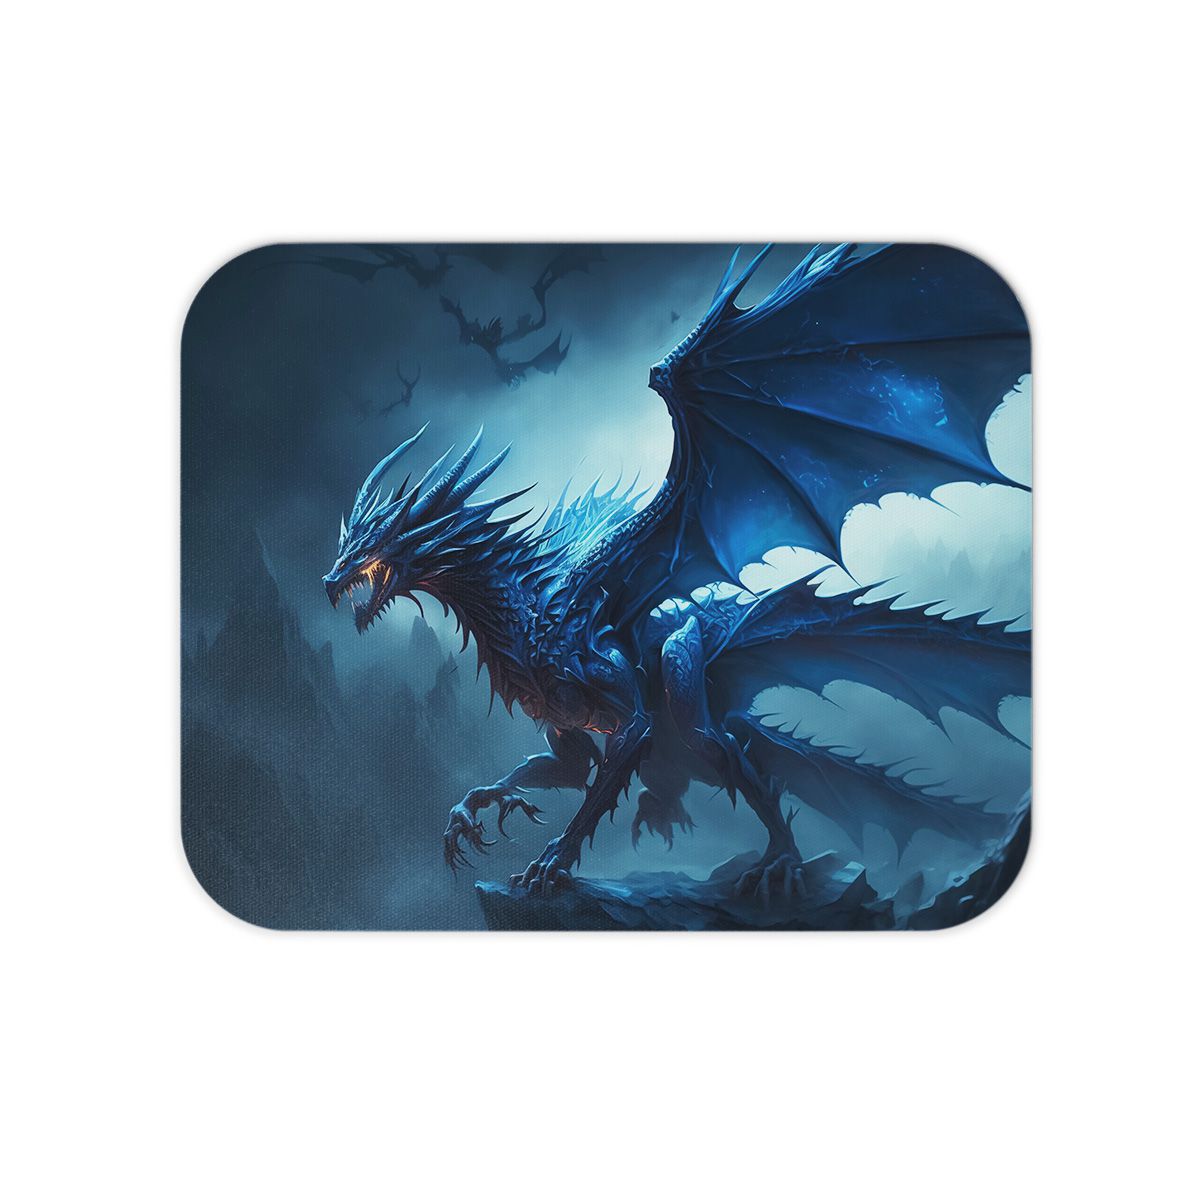 Dragão (Dragon)  Livros com Pipoca